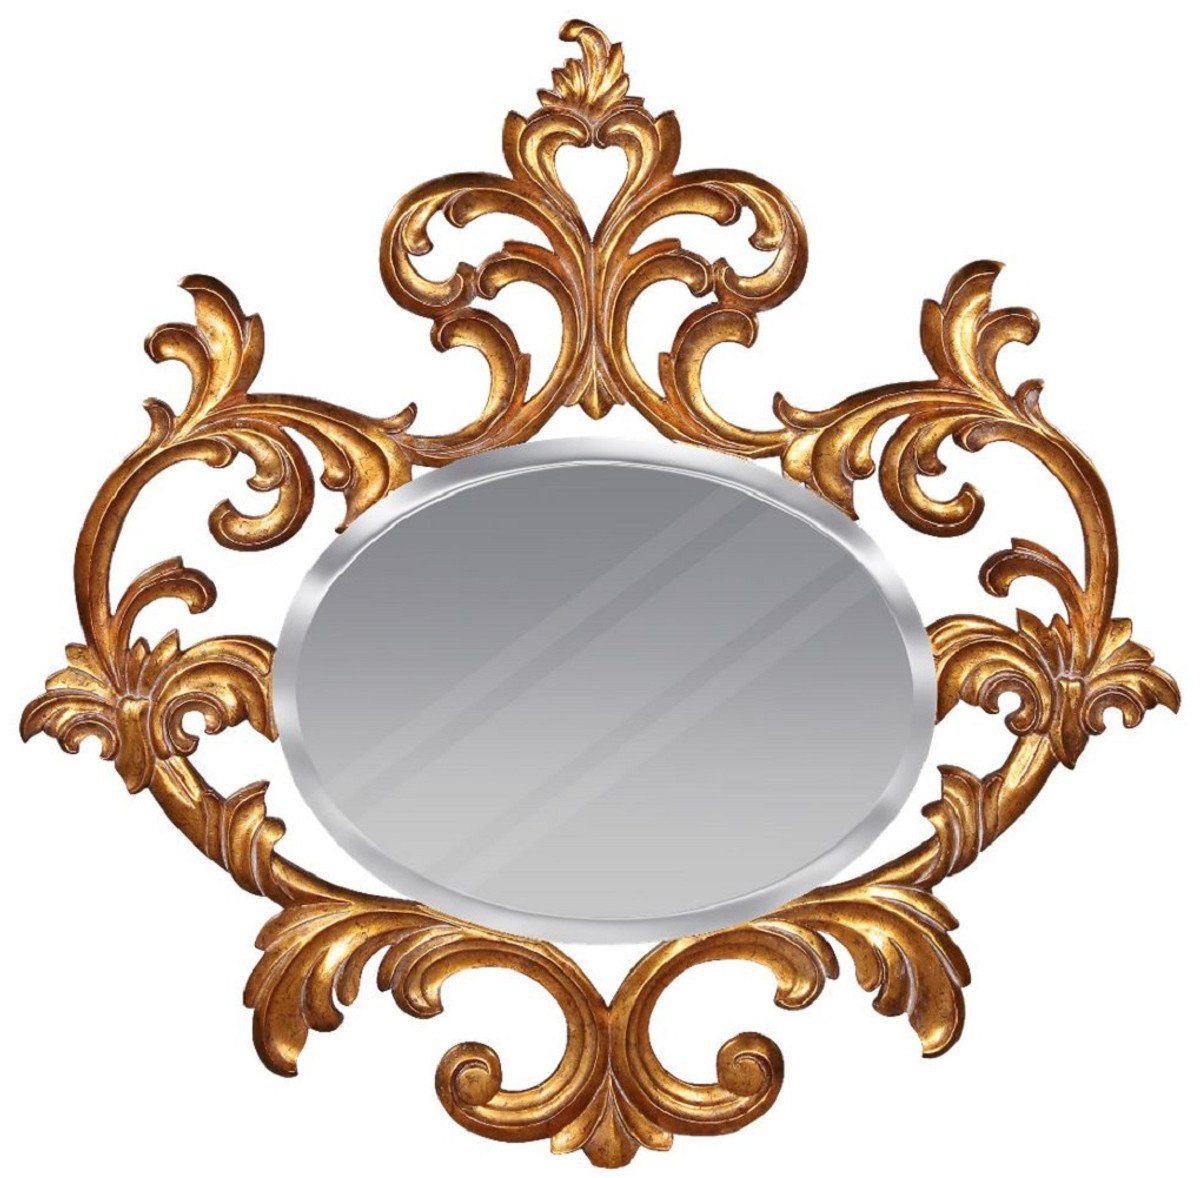 & Casa Prunkvoller - Spiegel Barock Padrino Wohnzimmer Edel Prunkvoll Luxus Mahagoni Spiegel Gold Barockspiegel Spiegel Barockstil Barock Möbel - im - Garderoben Wandspiegel - -